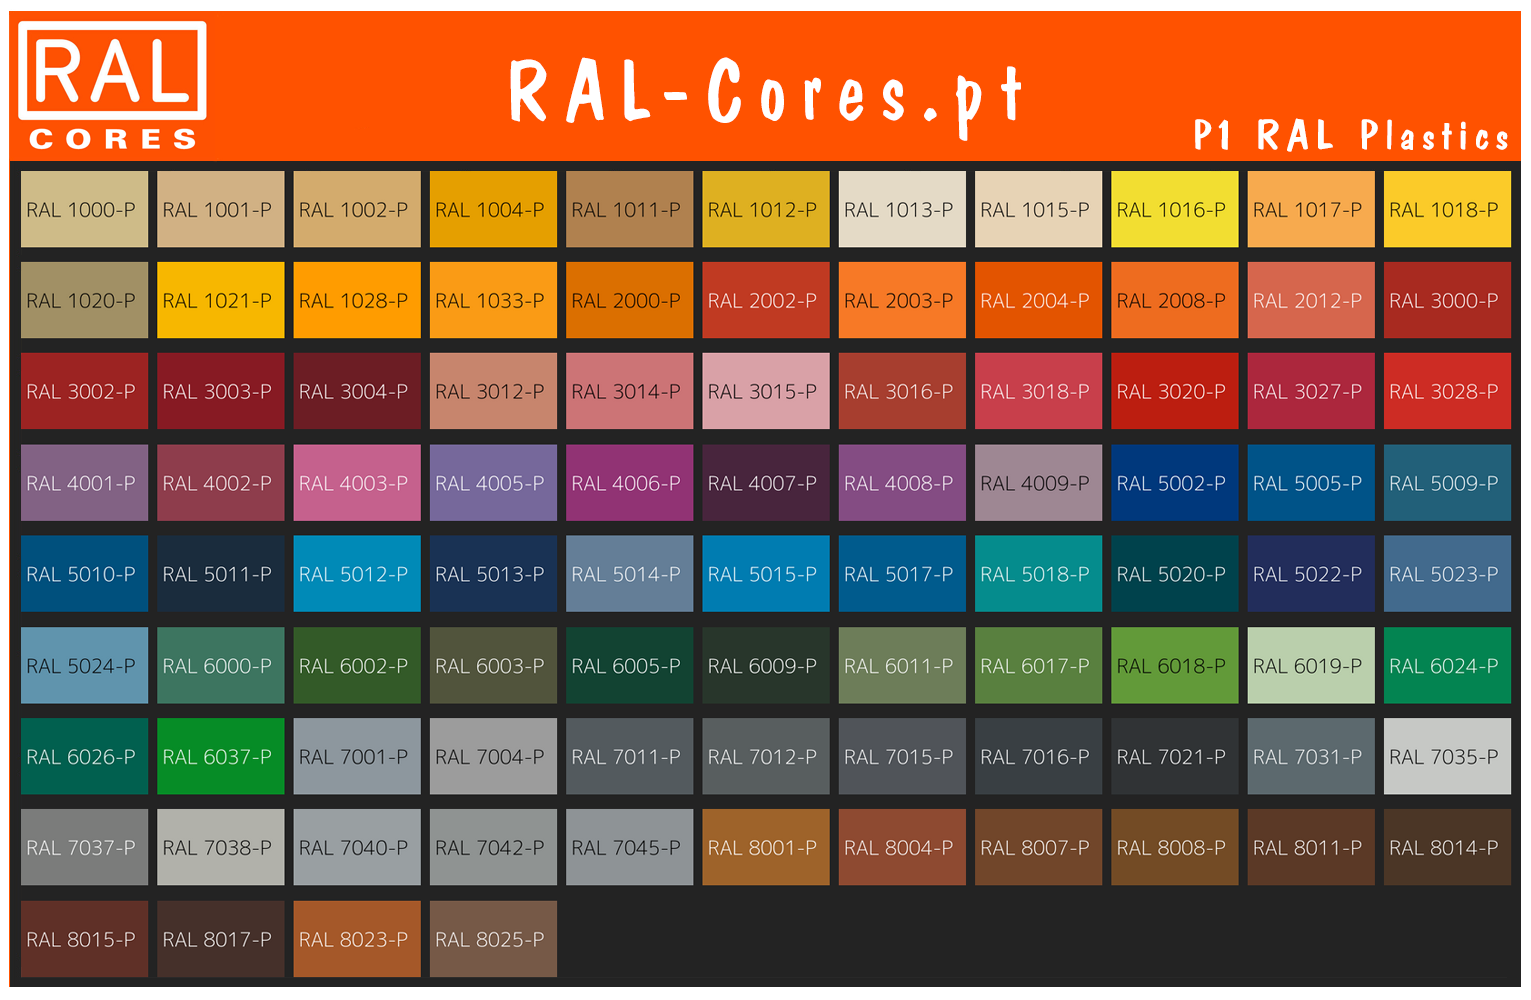 P1 RAL plastics gráfico de cores